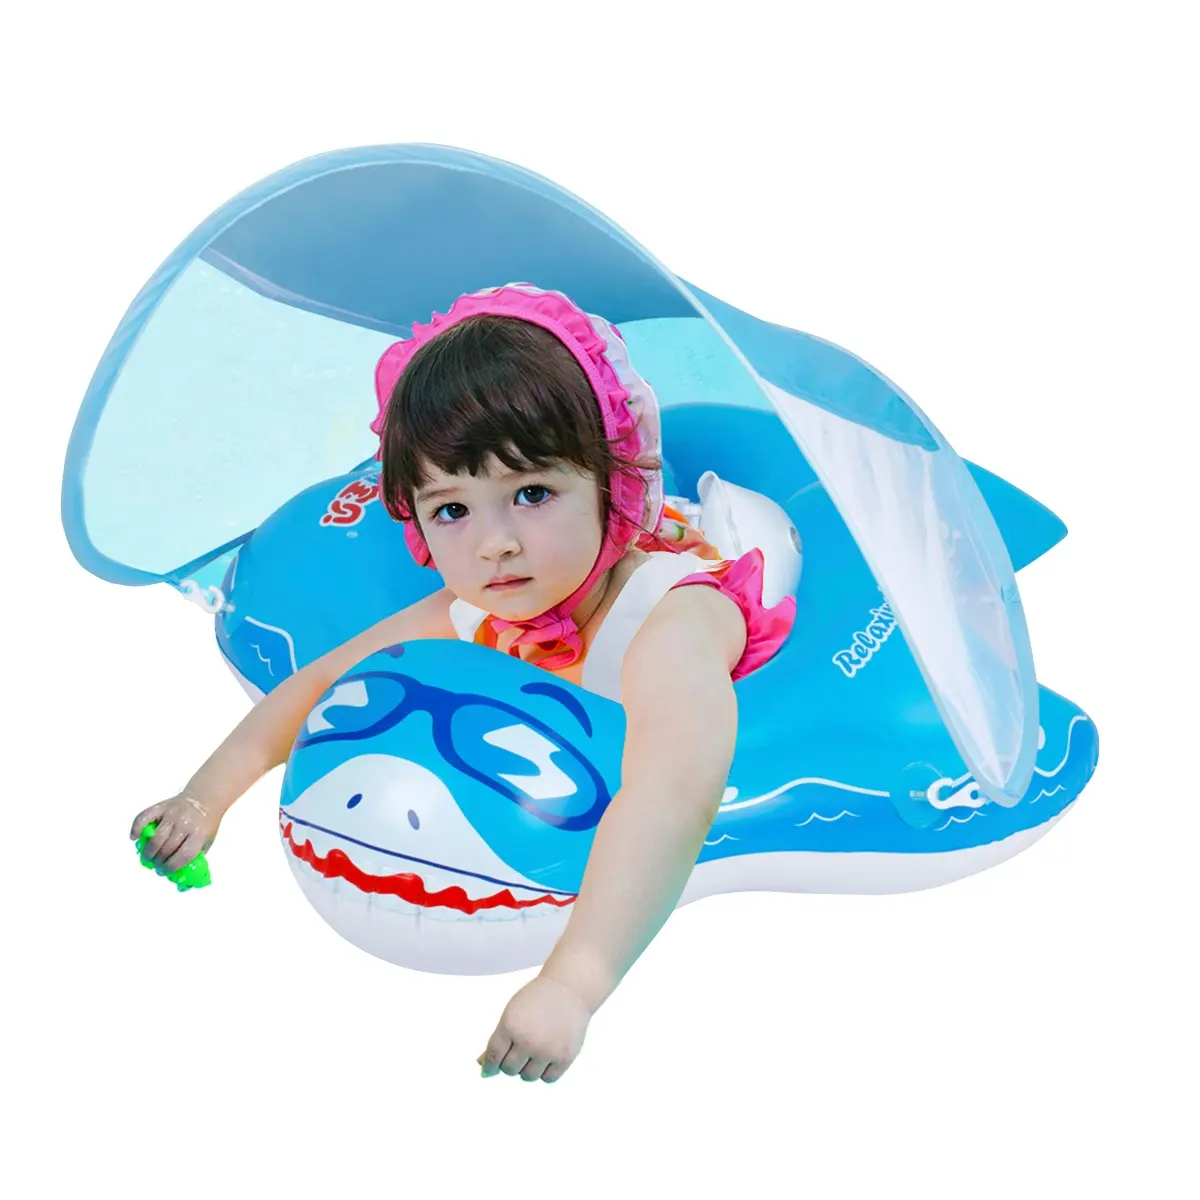 Custom Swimming Pool Floats For Children Inflatable Swimming Float Swim Ring For Infants